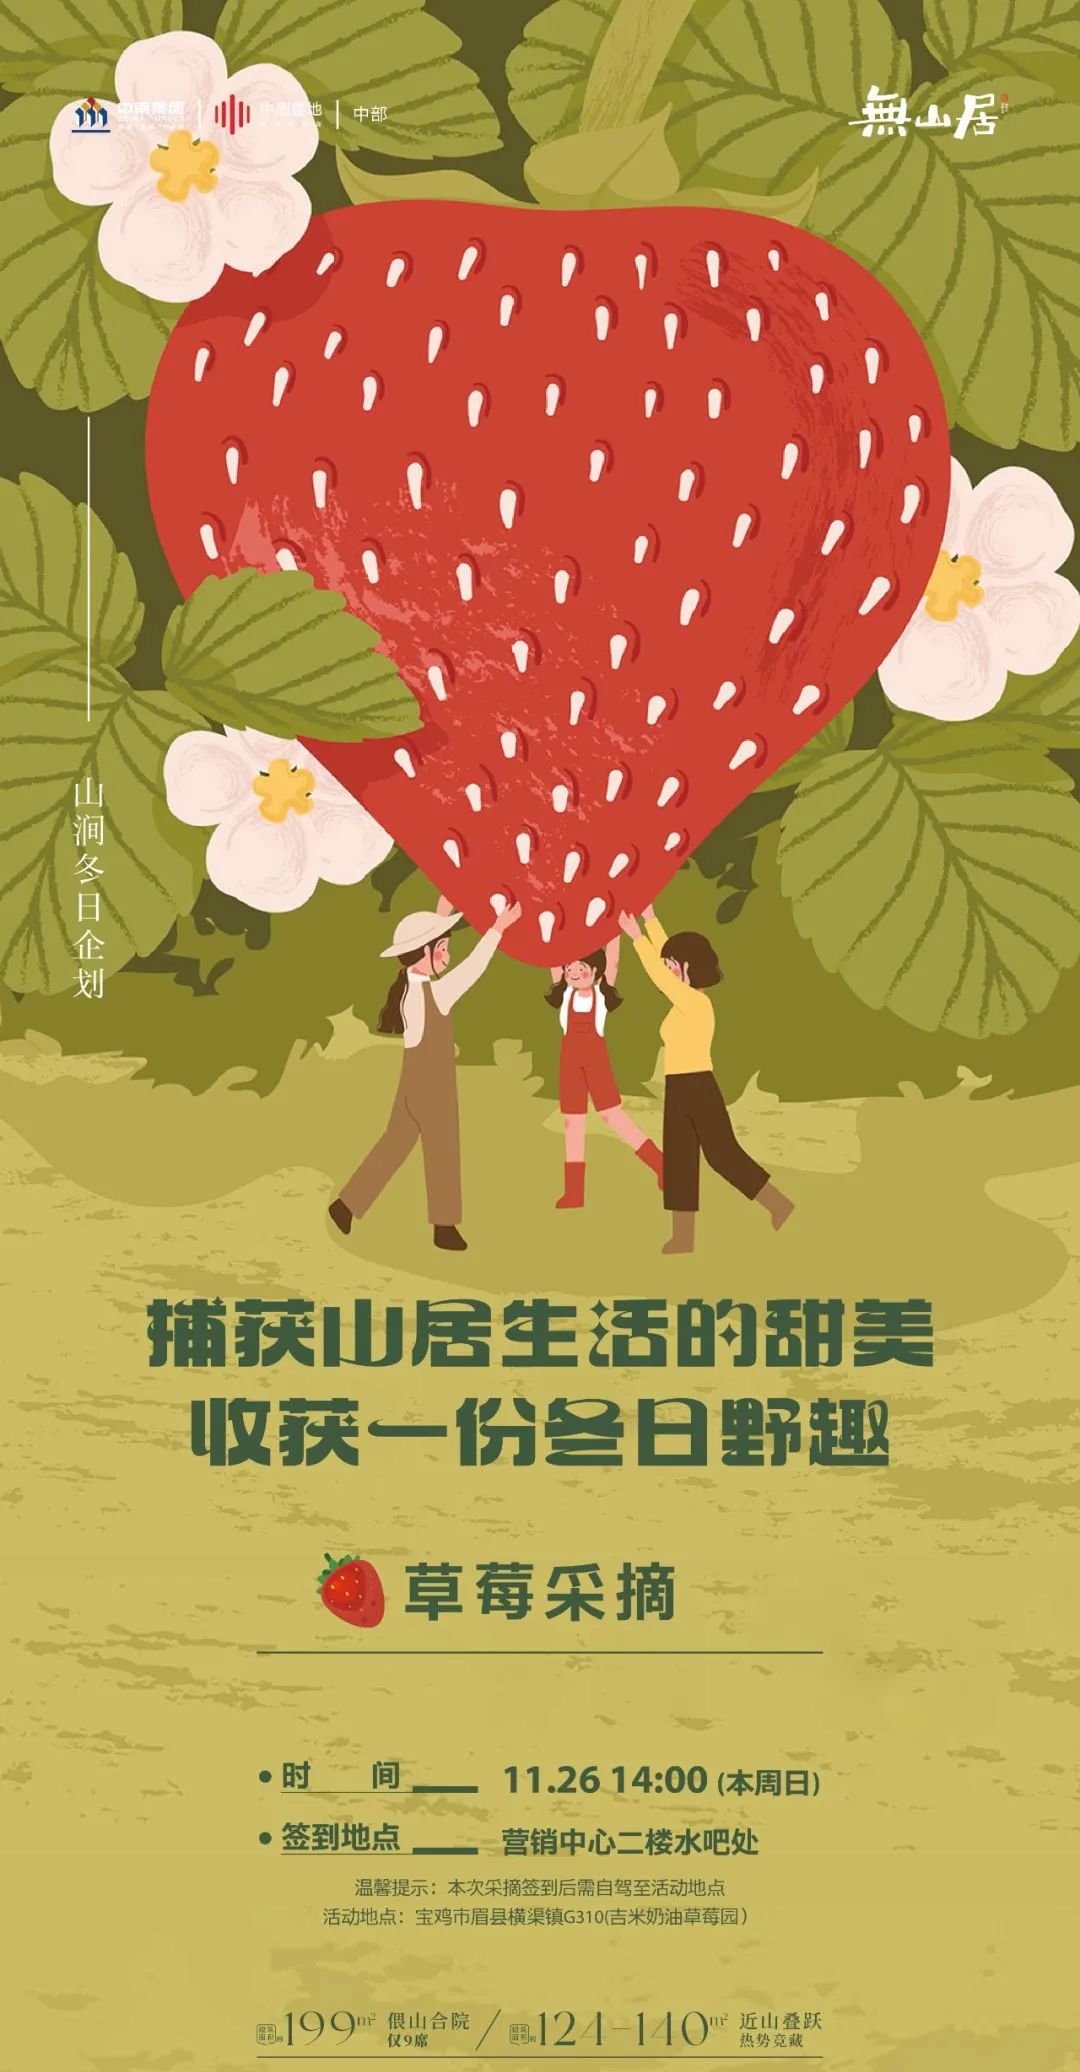 無山居——山涧冬日企划之草莓采摘